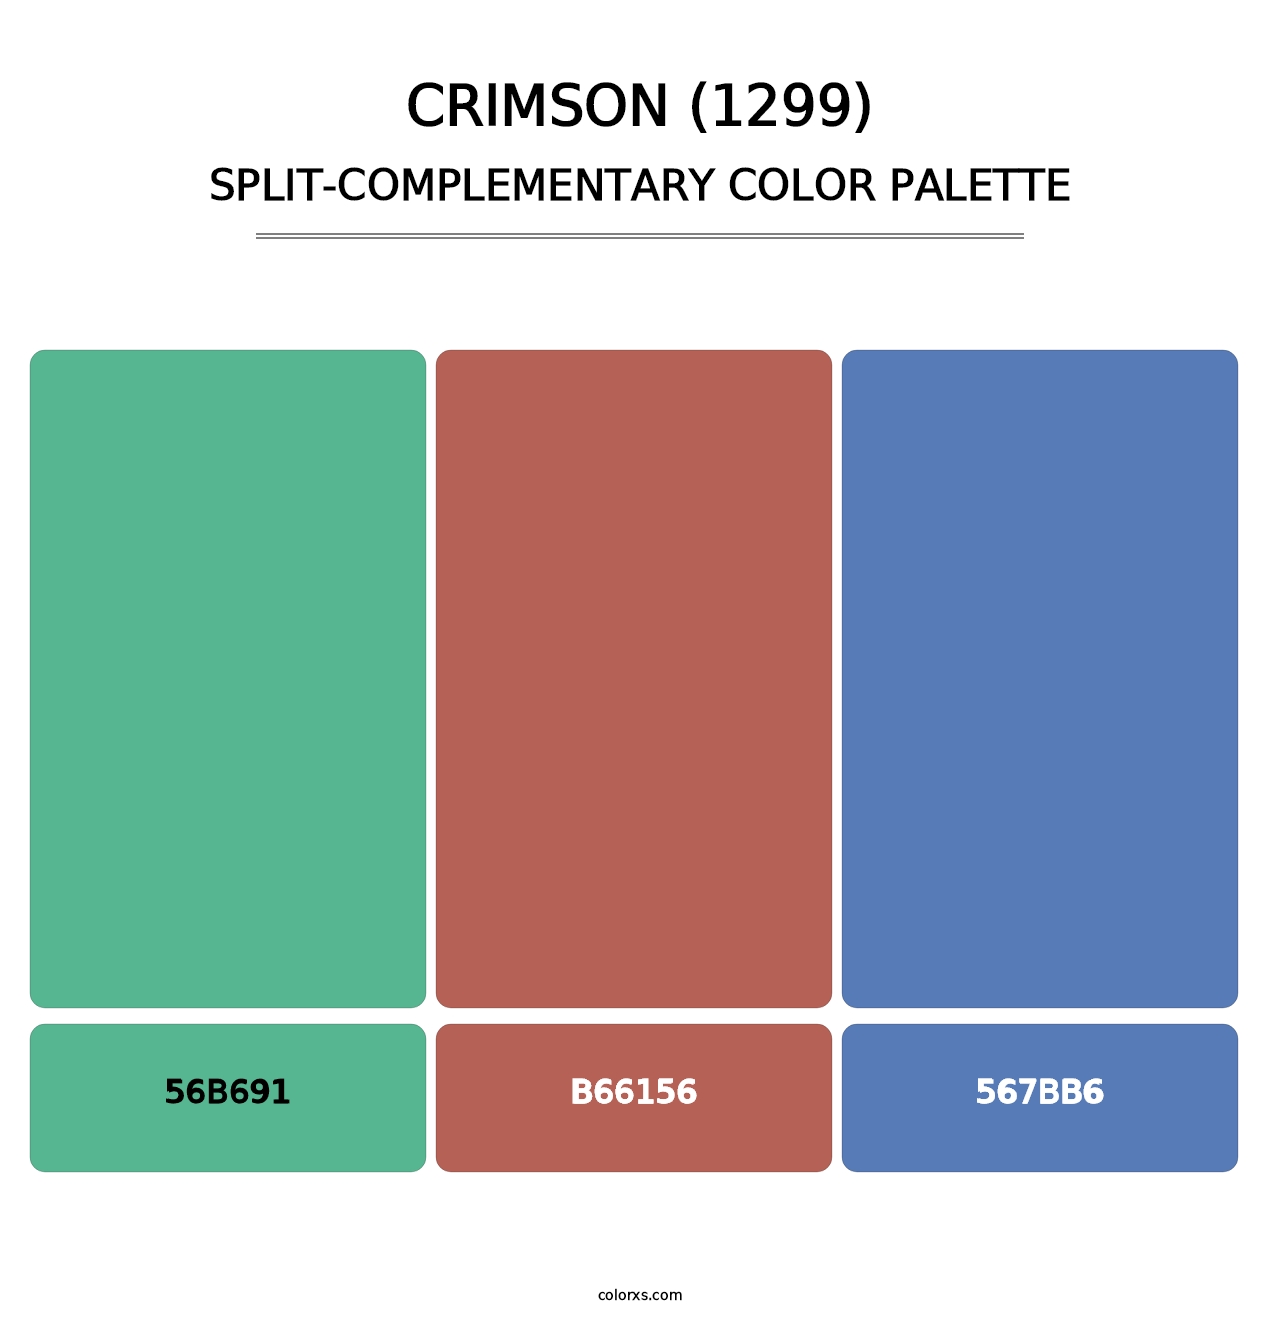 Crimson (1299) - Split-Complementary Color Palette